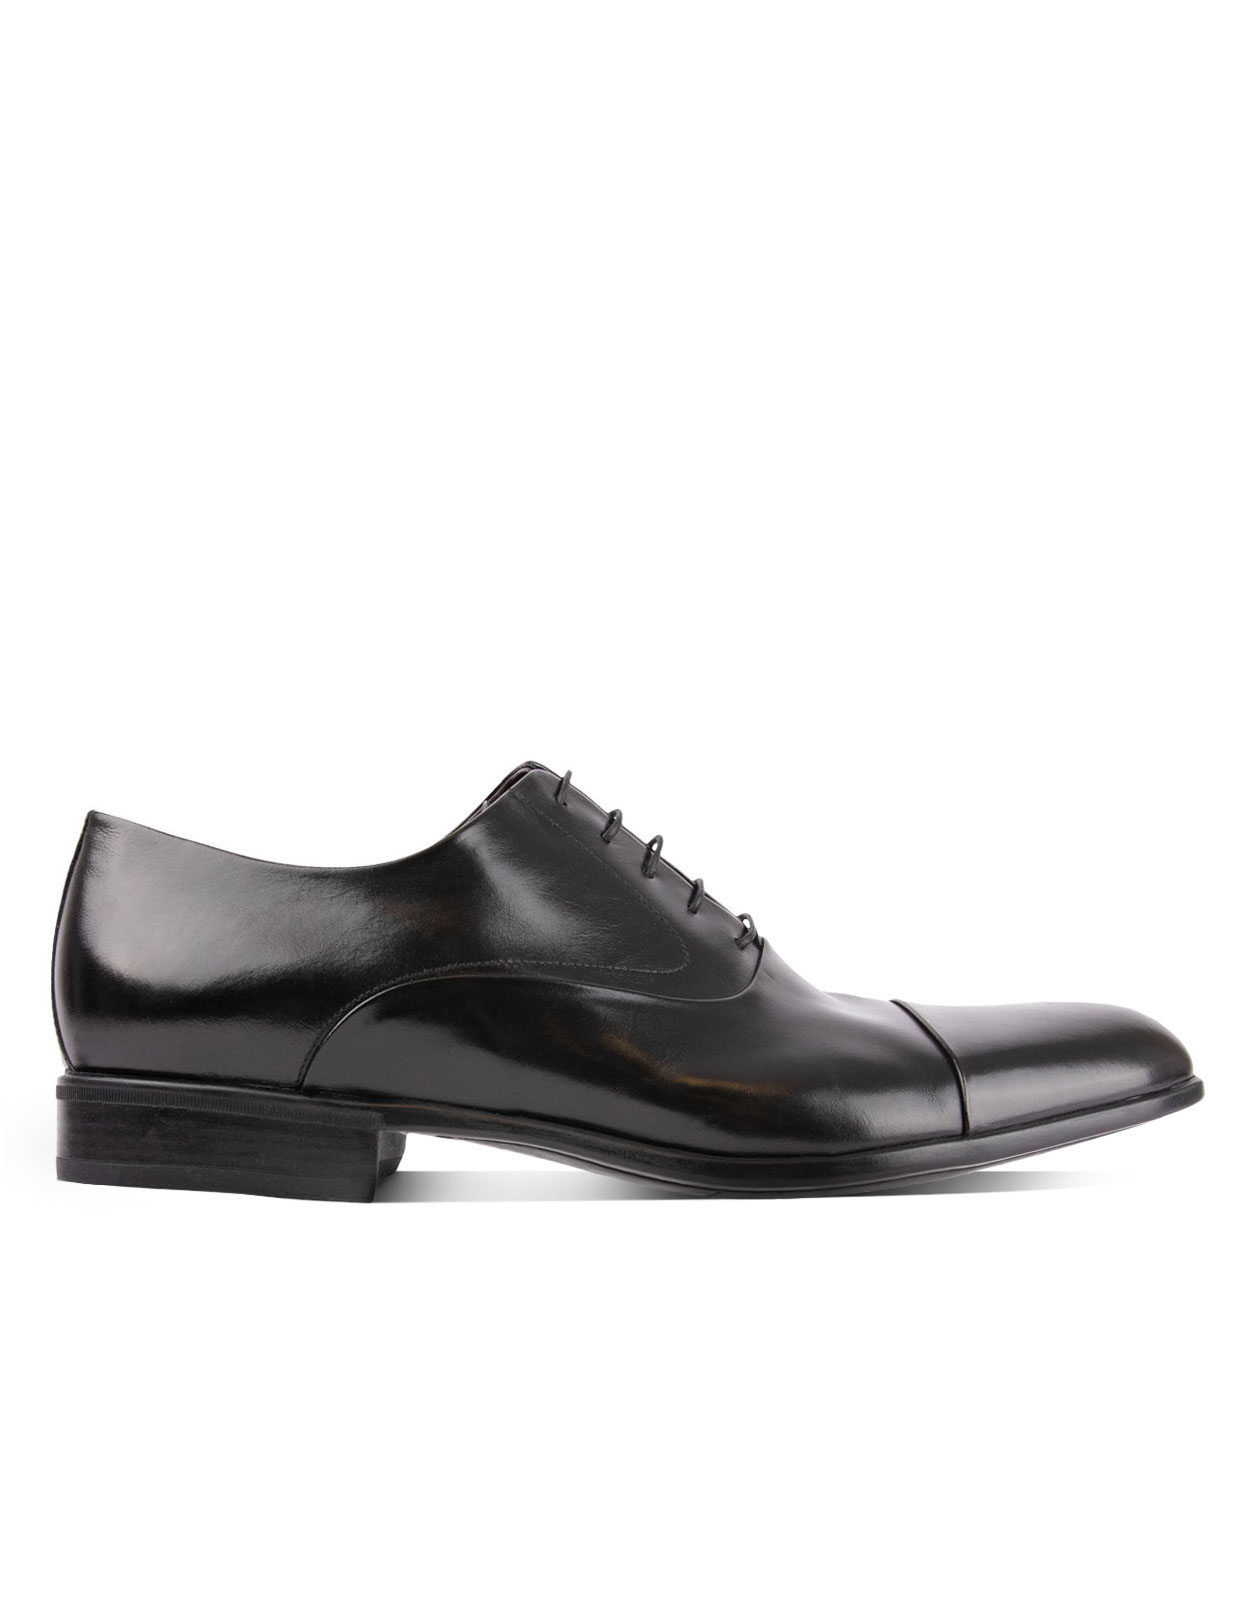 Bruges Oxford Shoe Black Stl 10.5